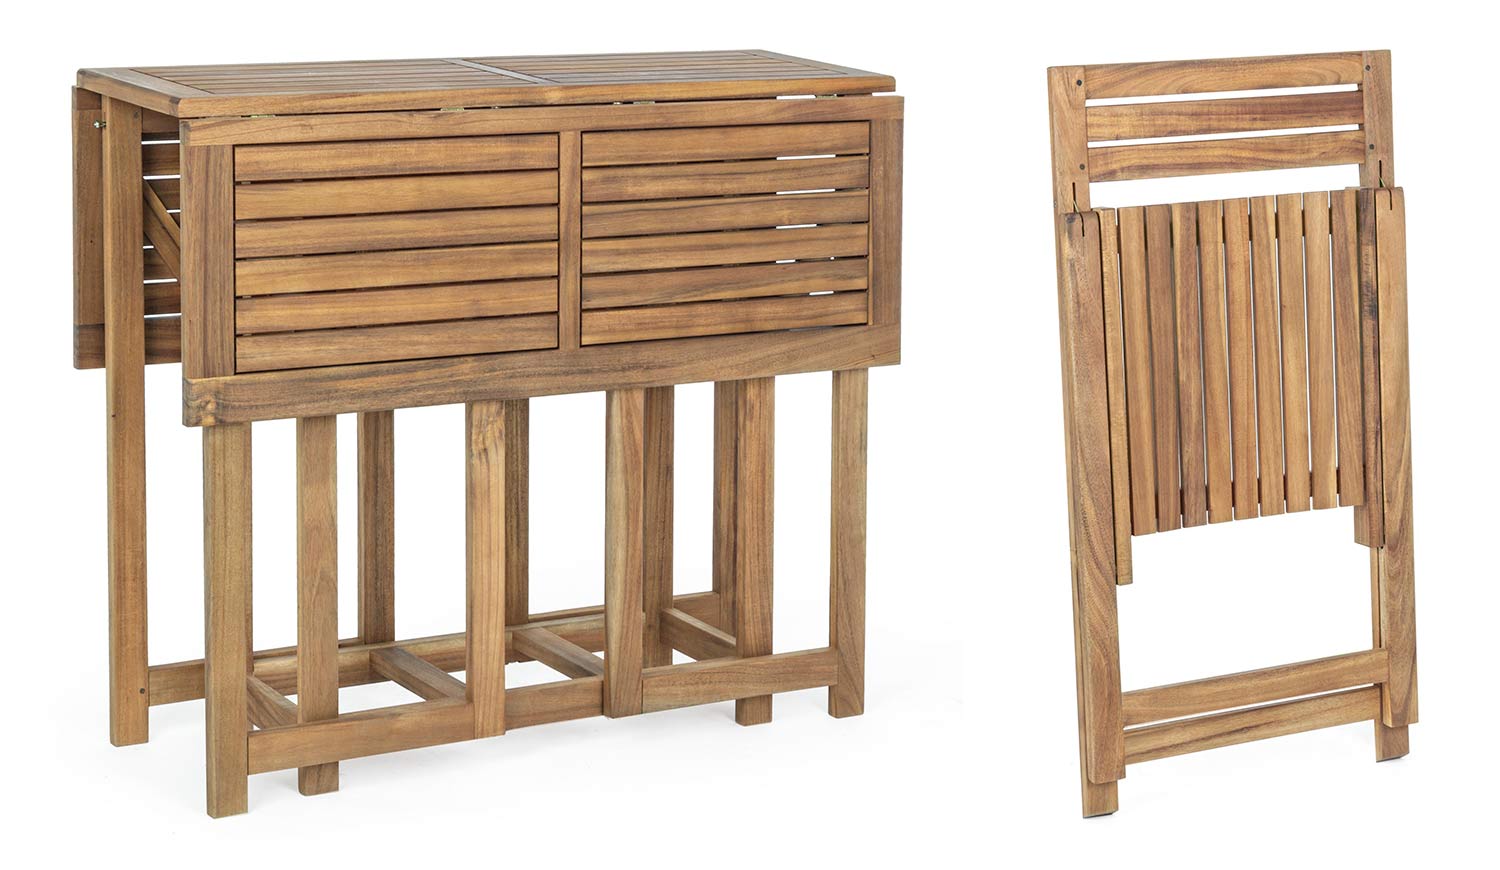 Akácfából készült, változtatható szélességű kerti asztal négy darab székkel.